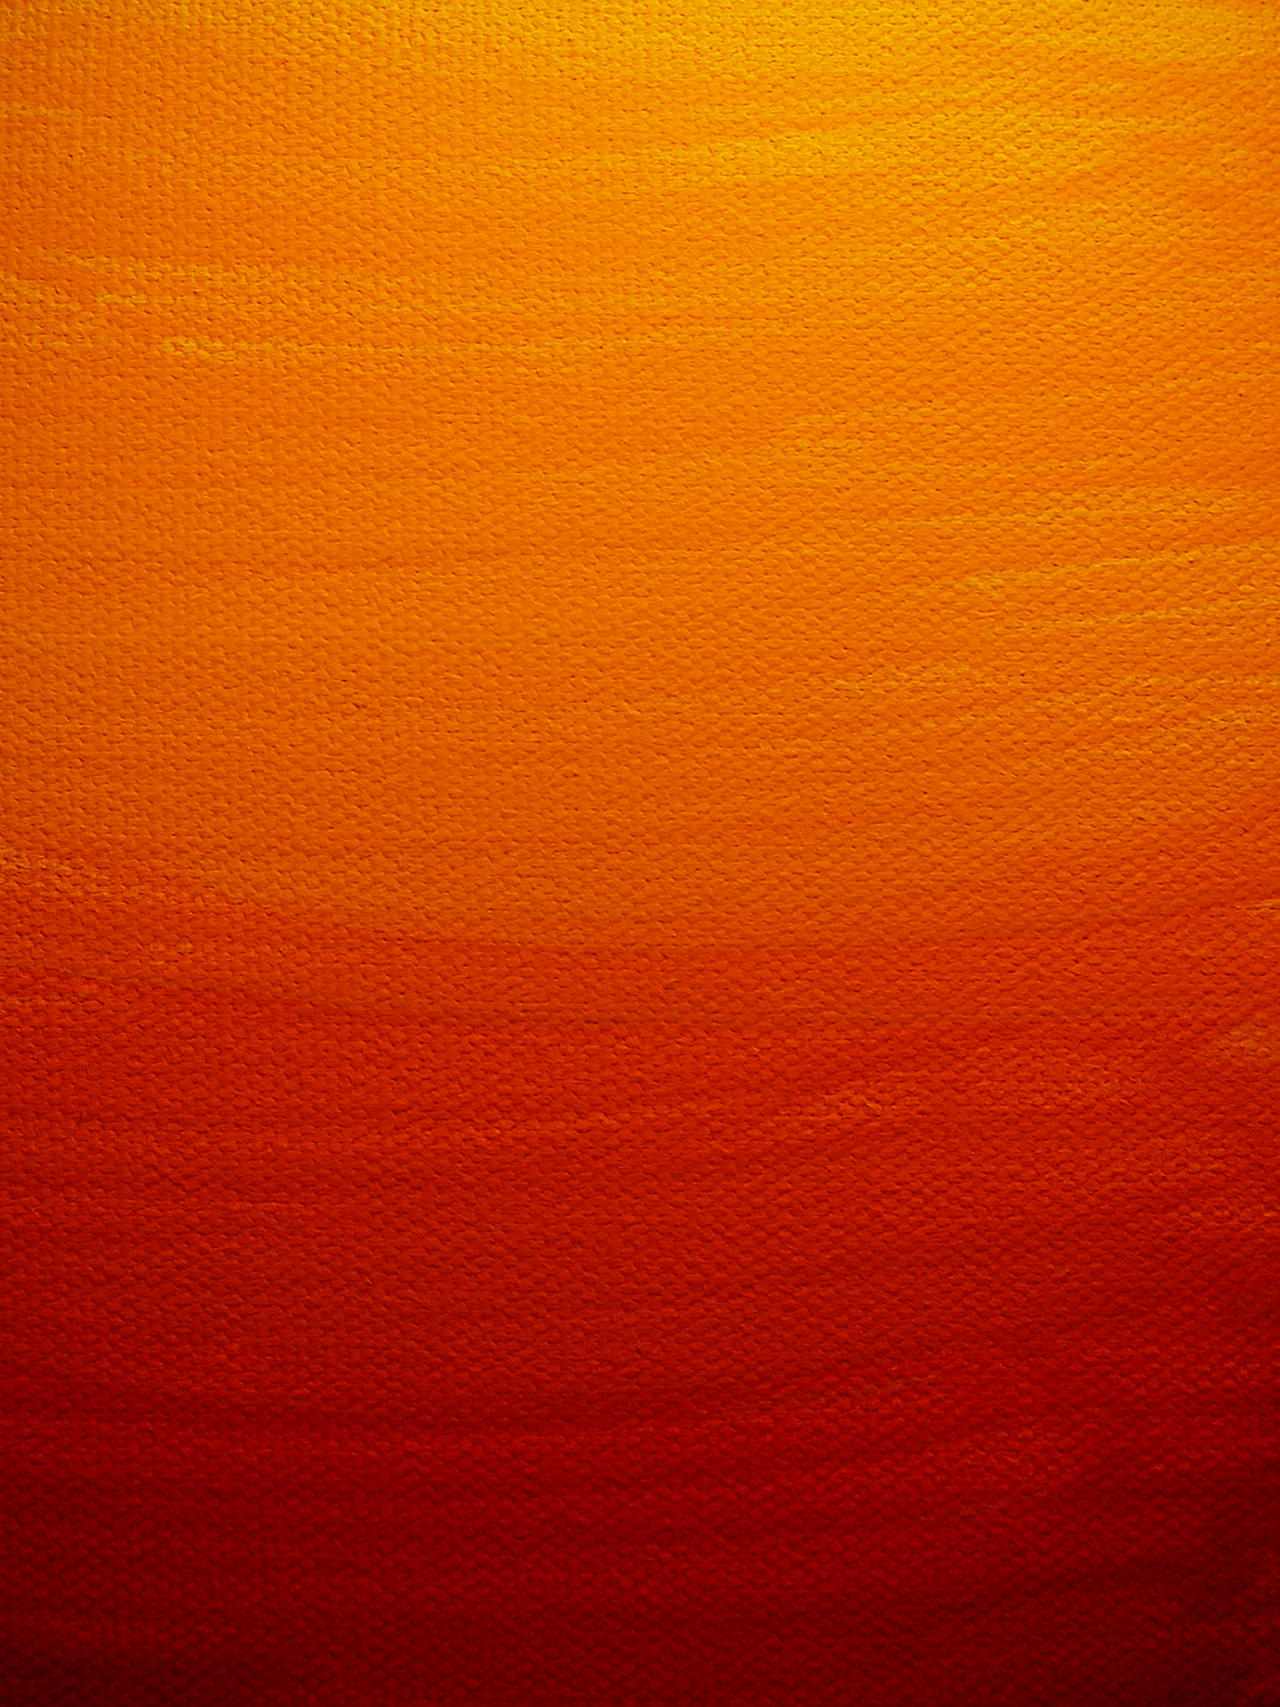 http://fc05.deviantart.net/fs14/i/2007/084/e/4/Sunset_Paint_Canvas_Texture_by_Enchantedgal_Stock.jpg